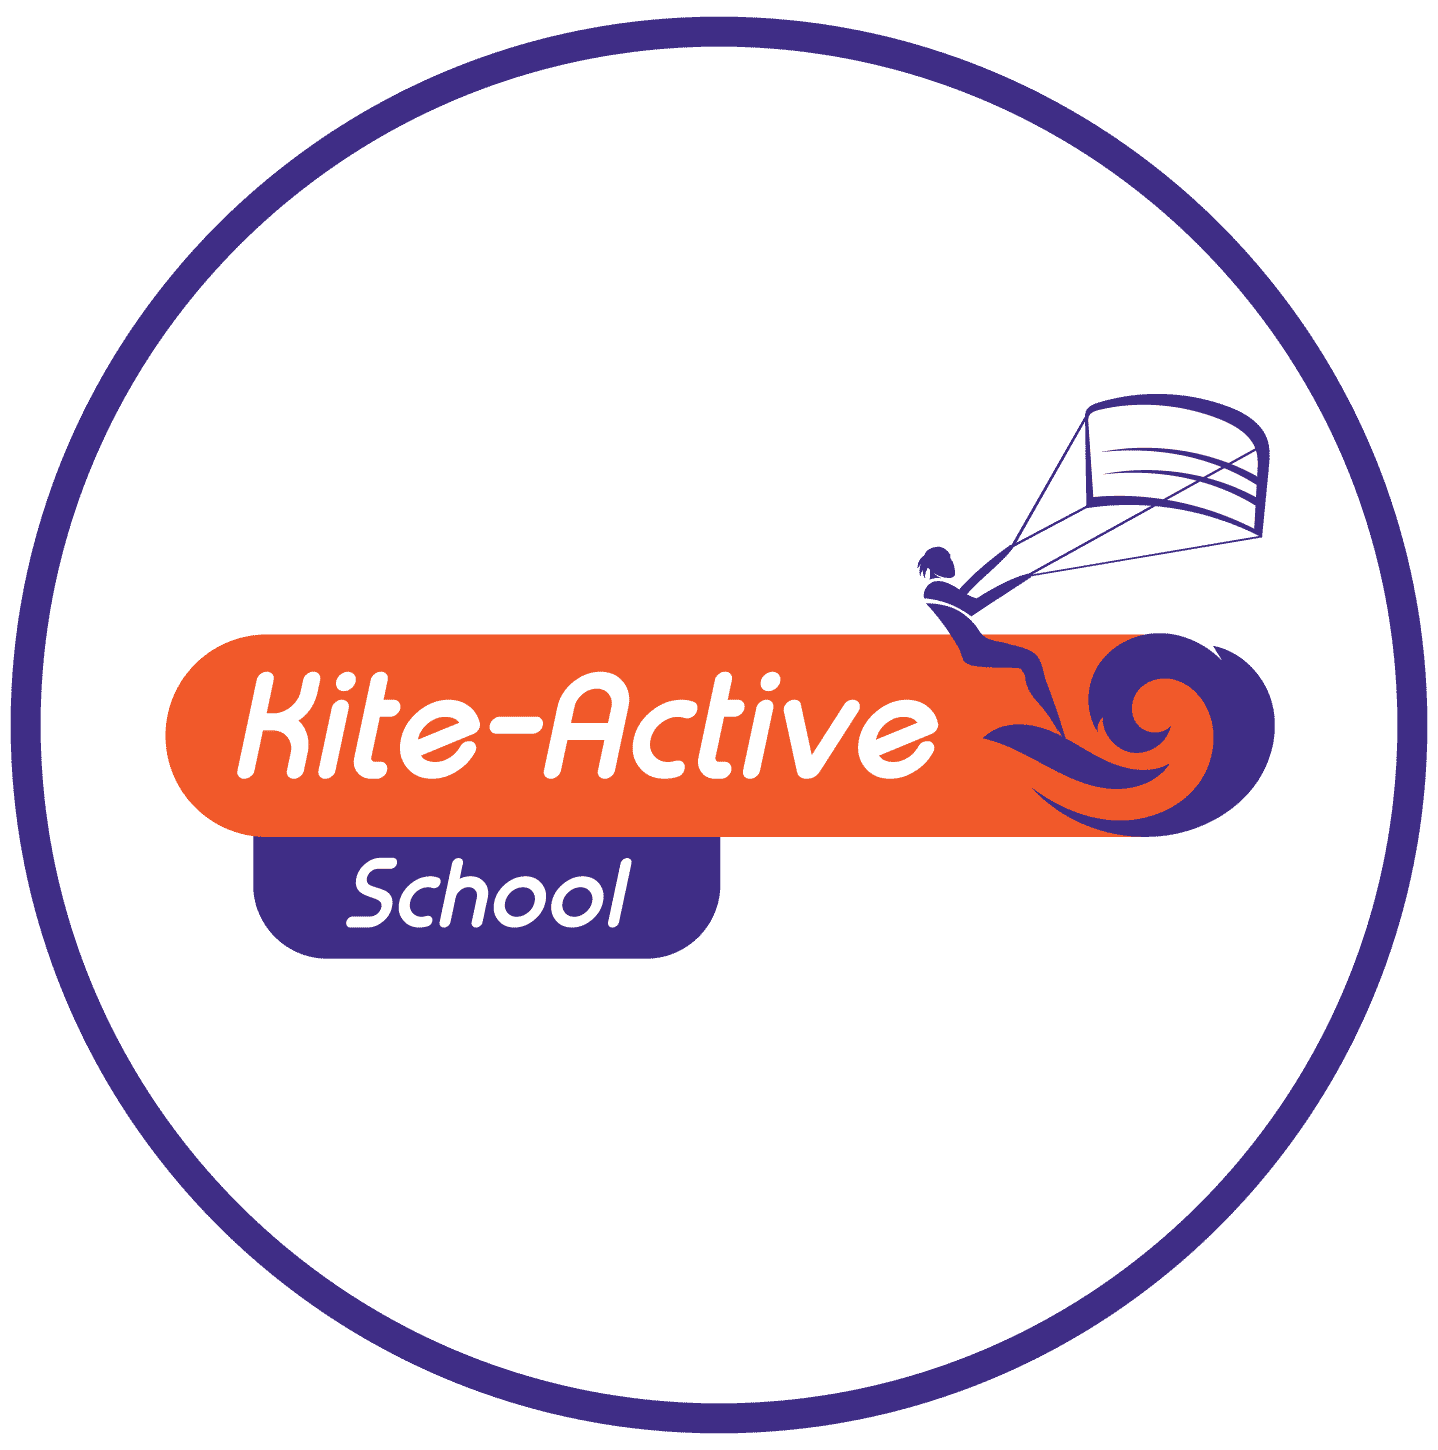 Kite-Active School